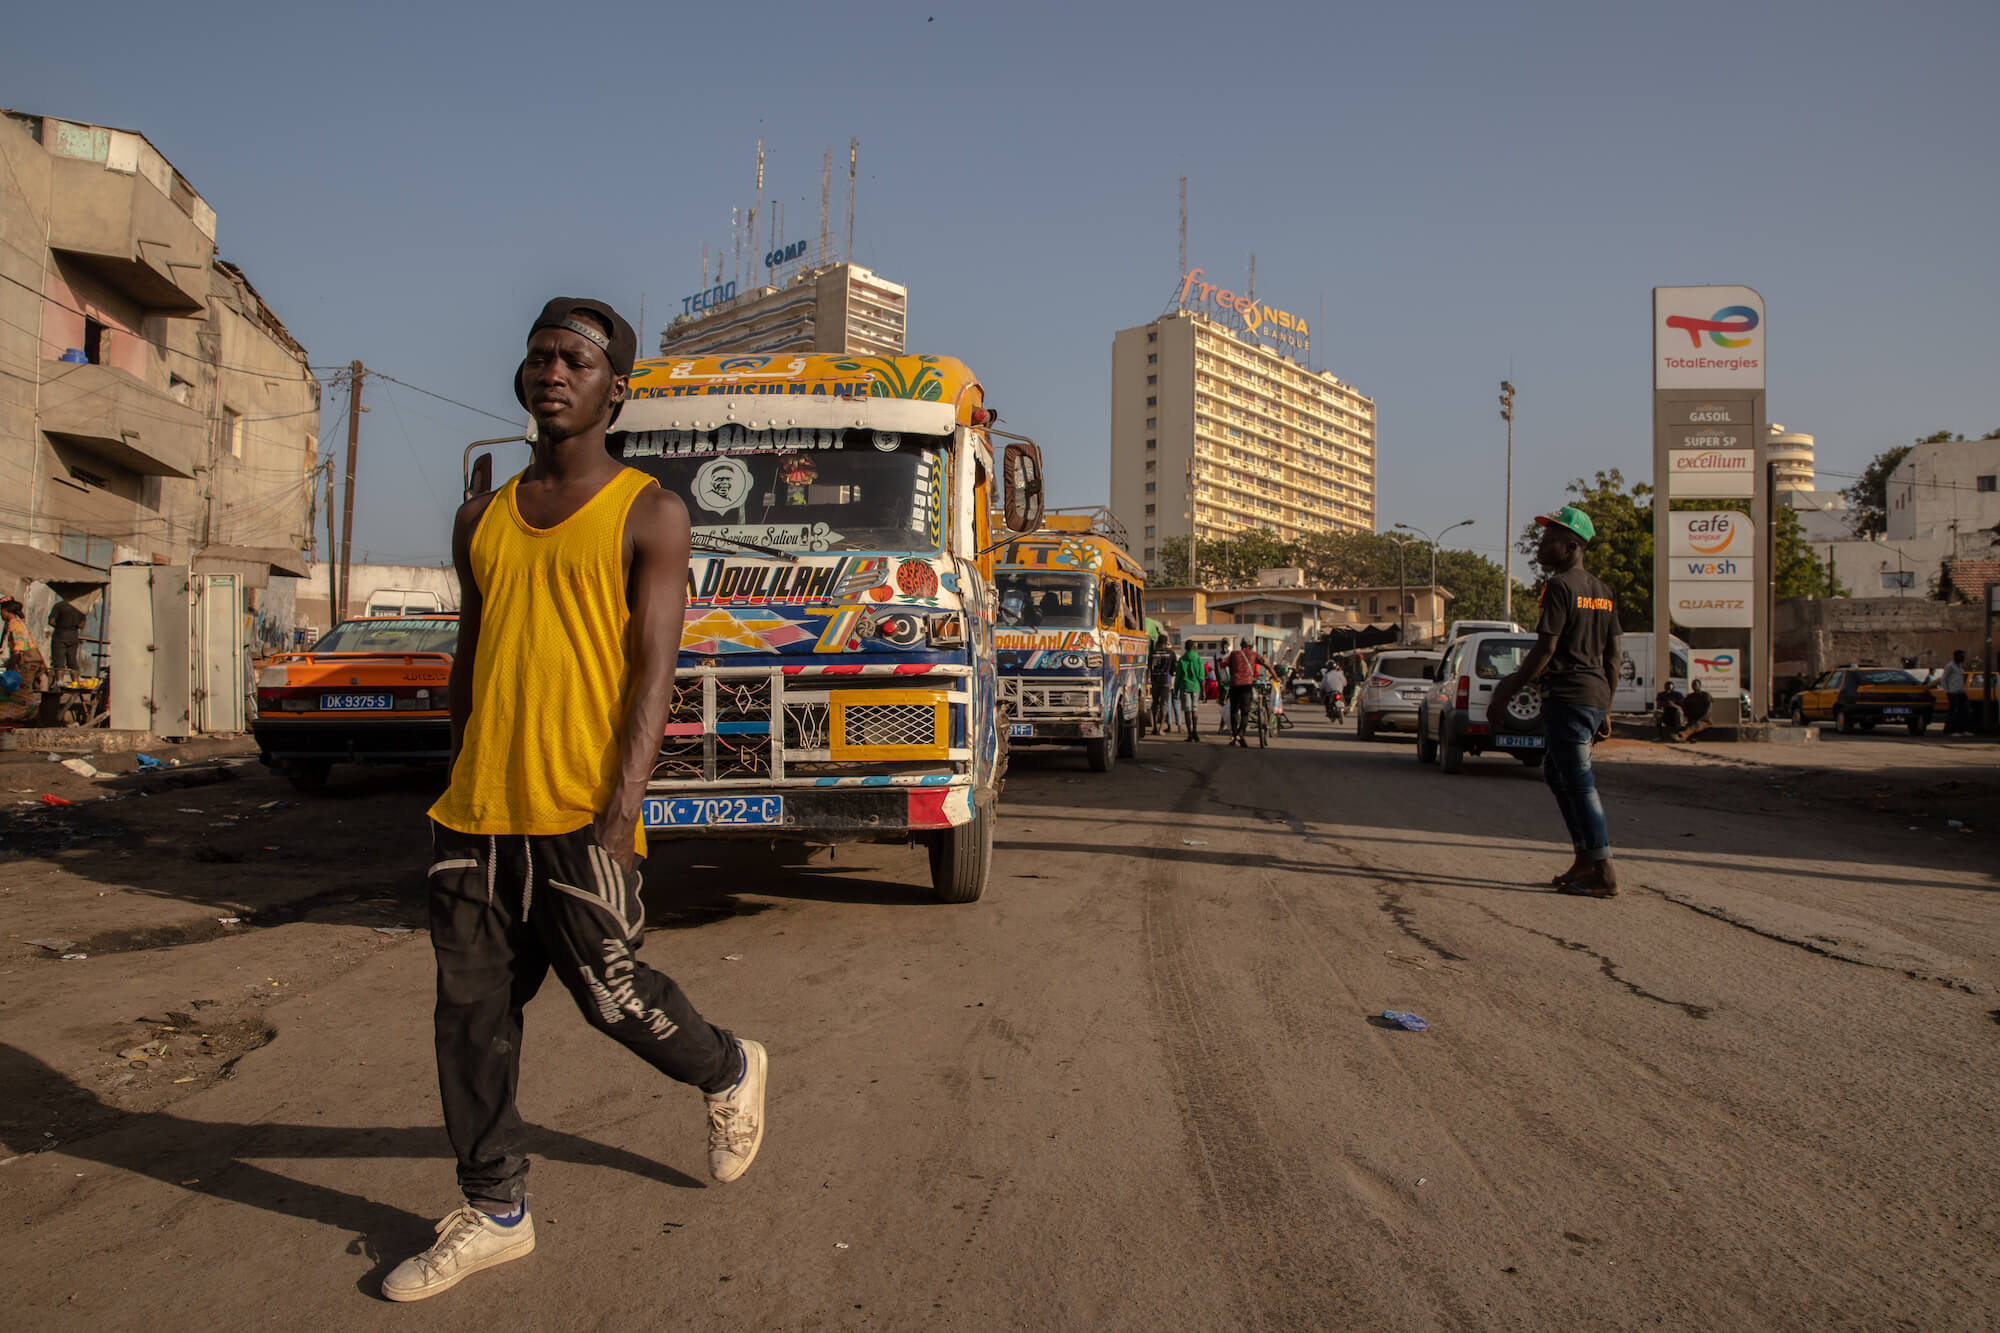 Eine lebendige Straße im Senegal: Im Vordergrund überquert ein Mann die Straße, im Hintergrund Busse, Autos und Gebäude